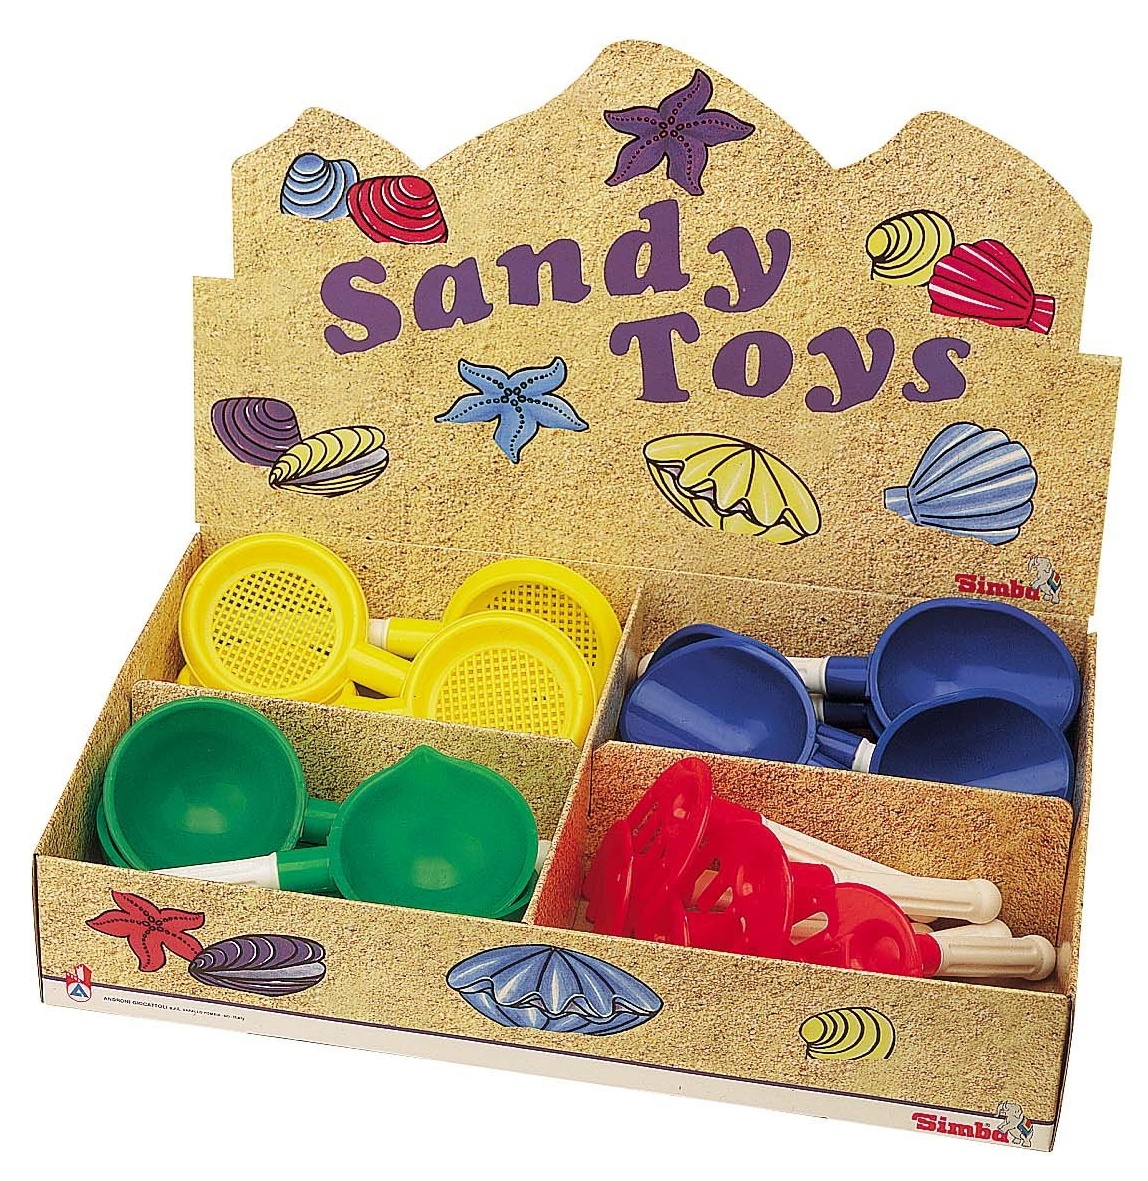 Set de jucării pentru nisip Androni 24pcs (4350-00)